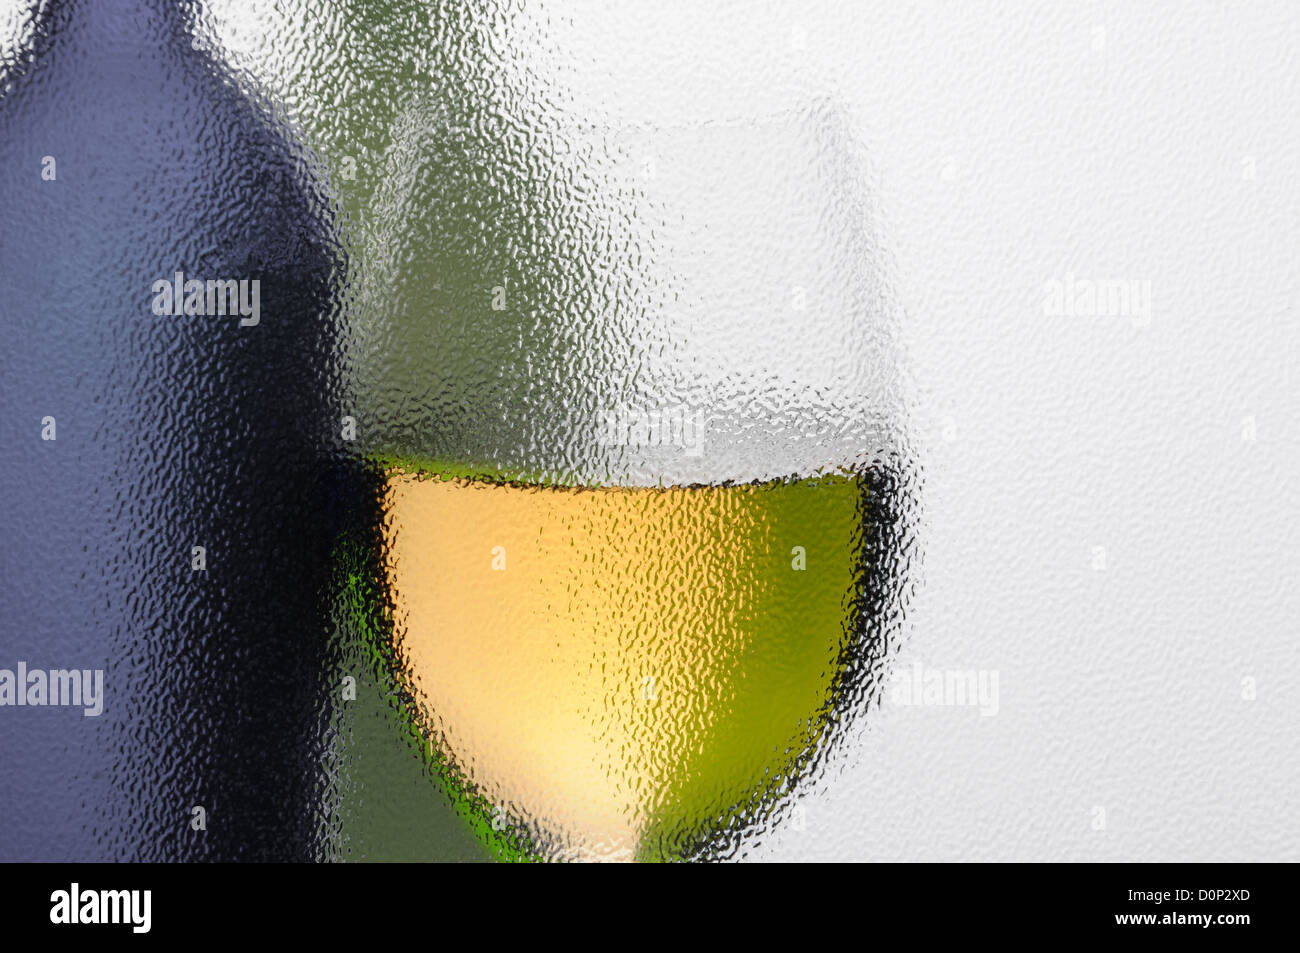 Eine abstrakte Aufnahme von einem Glas Wein und Weinflaschen, die durch ein strukturiertes Fenster gesehen. Querformat mit Textfreiraum. Stockfoto